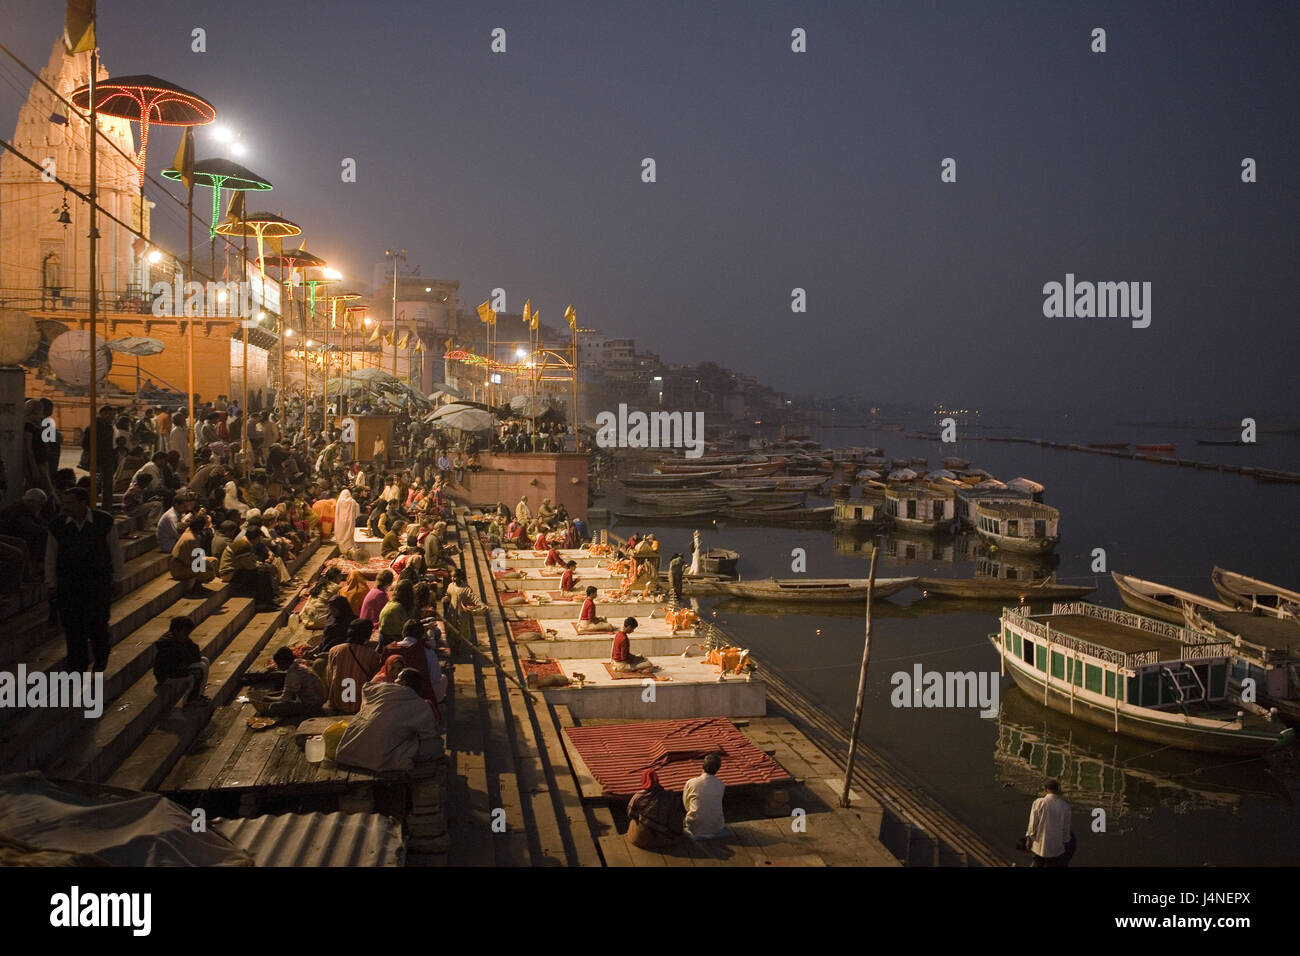 Indien, Uttar Pradesh, Benares, Dasawamedh Ghat, Beleuchtung, Gläubige, Abend, Stockfoto